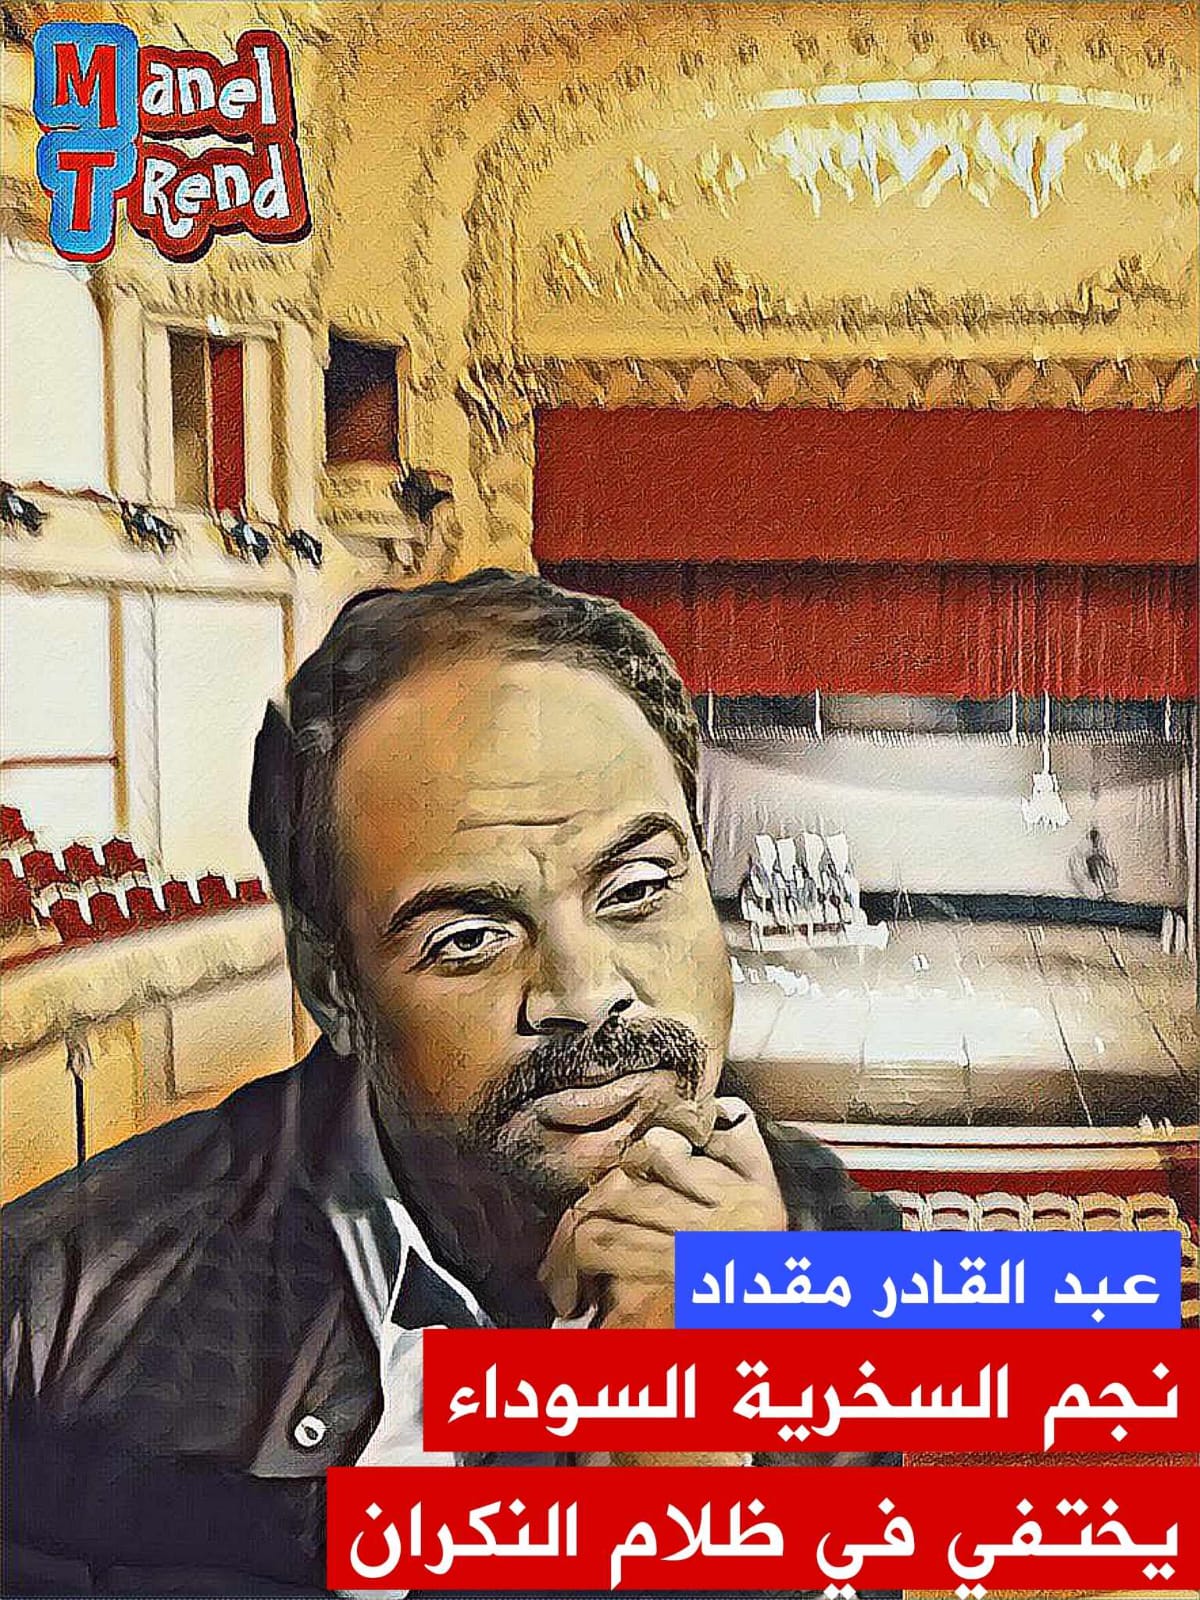 حلقة جديدة من برنامج "ترند مع منال" خصصت للاحتفاء بأحد أبرز الممثلين المسرحيين وهو عبد القادر مقداد